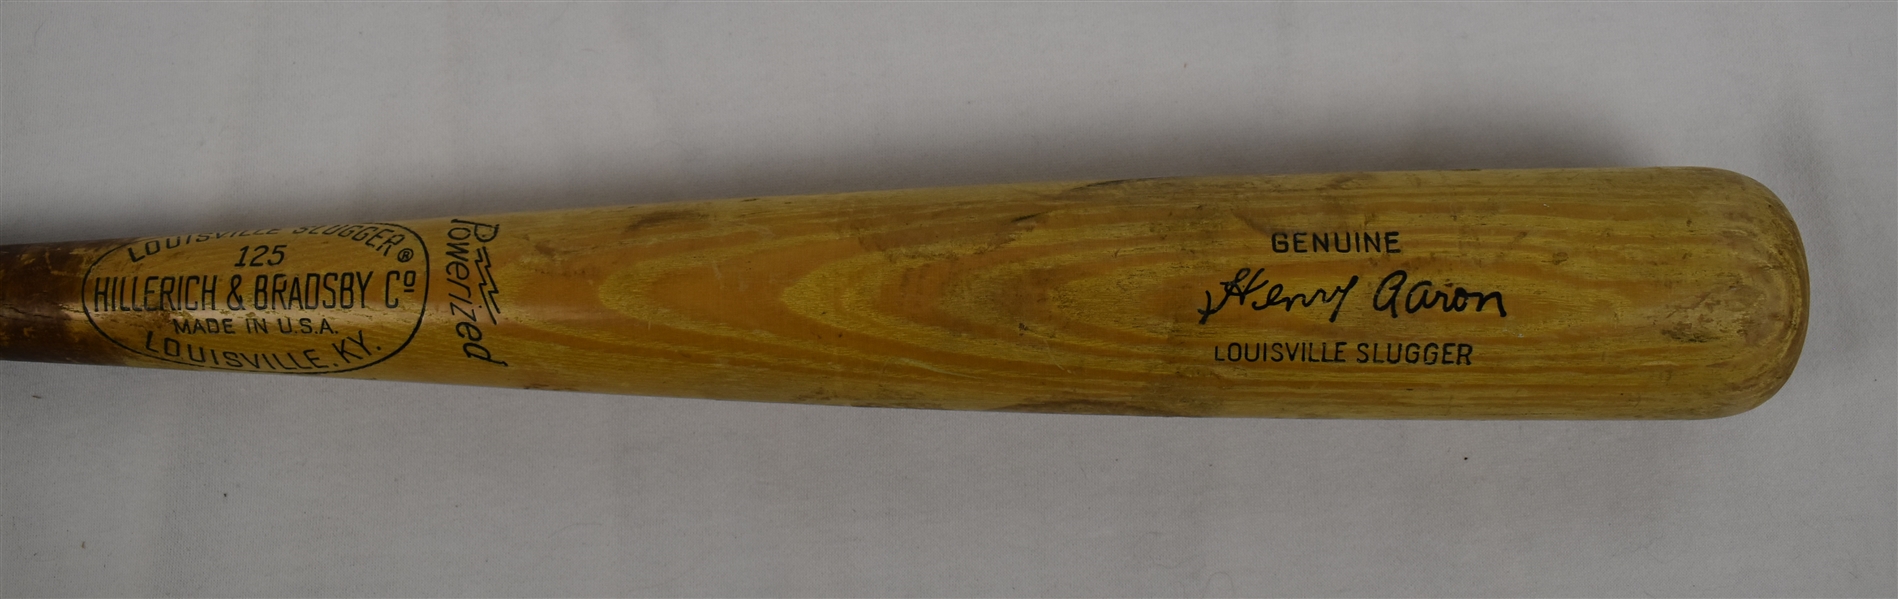 Hank Aaron Vintage Louisville Slugger Baseball Bat